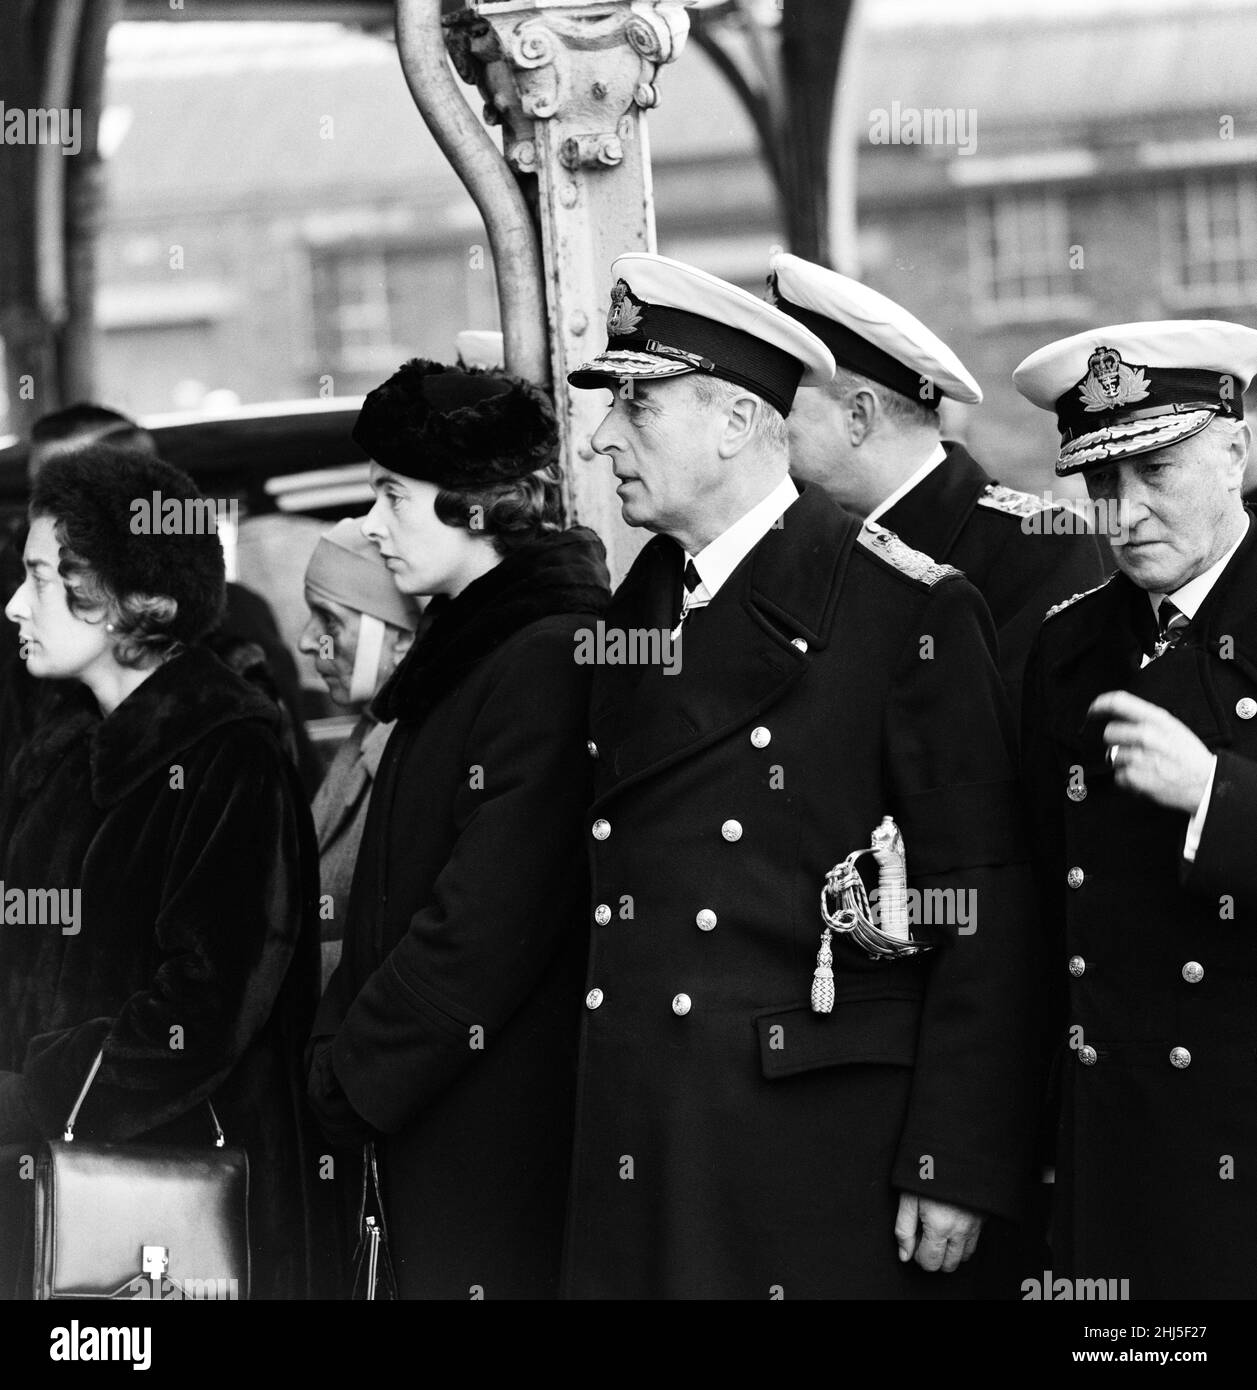 I funerali di Edwina Mountbatten, contessa Mountbatten della Birmania a bordo di HMS Wakeful al largo di Portsmouth. Louis Mountbatten guarda la bara mentre viene portata a bordo della nave, con lui sono le sue figlie Pamela e Patricia e sua sorella, la Principessa Alice. 25th febbraio 1960. Foto Stock